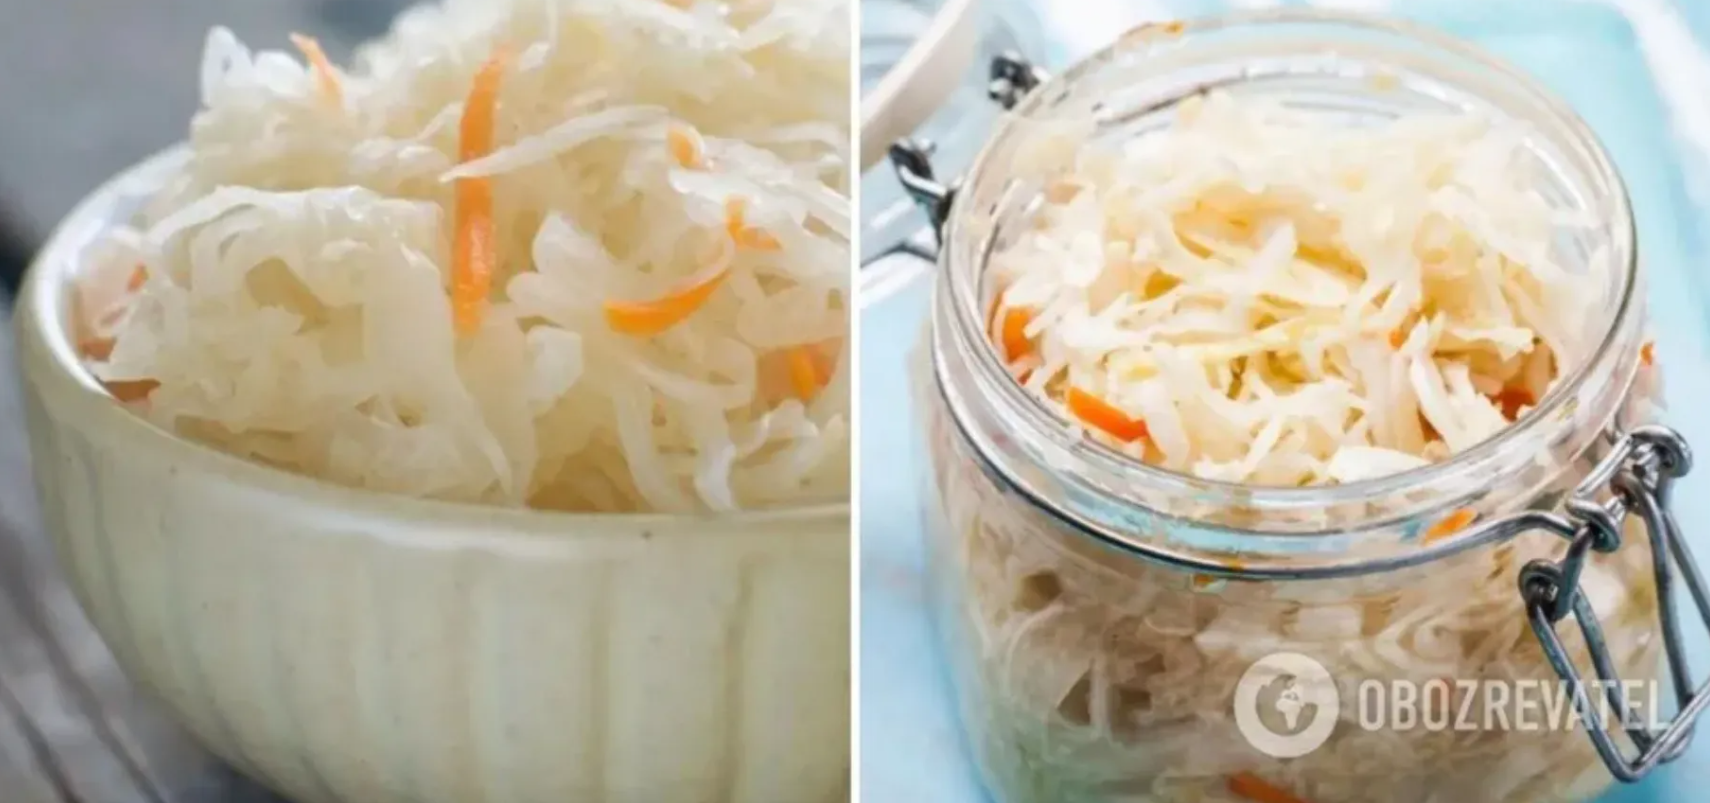 Why sauerkraut turns sour